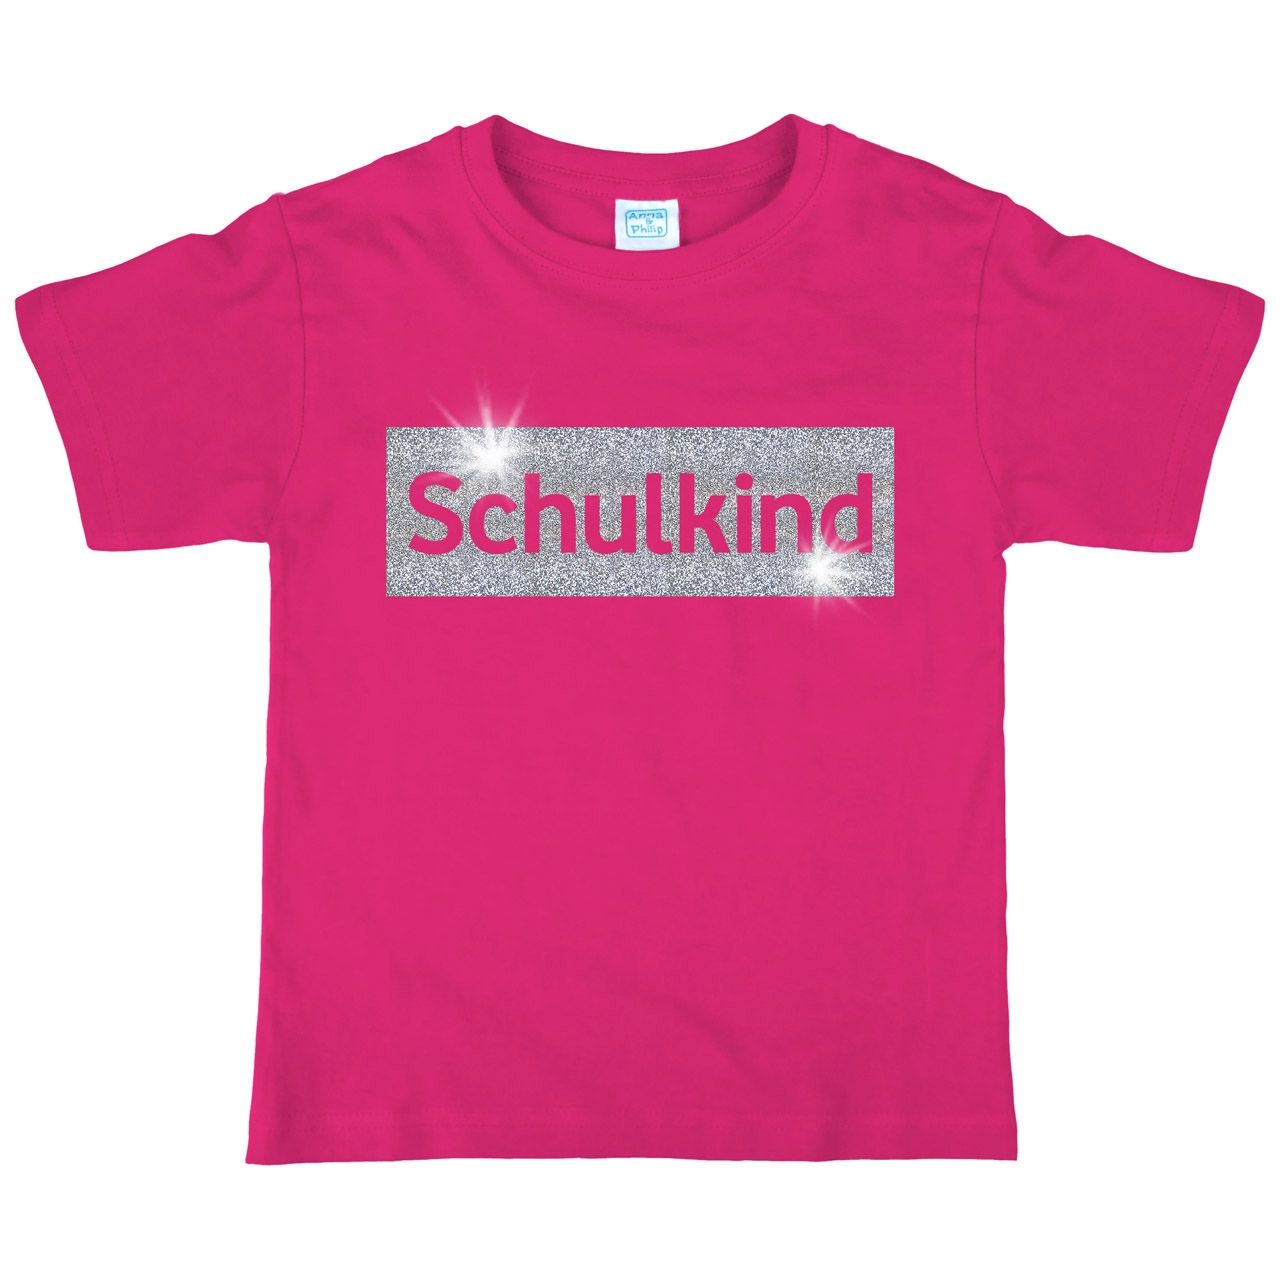 Schulkind Glitzer Kinder T-Shirt pink 122 / 128